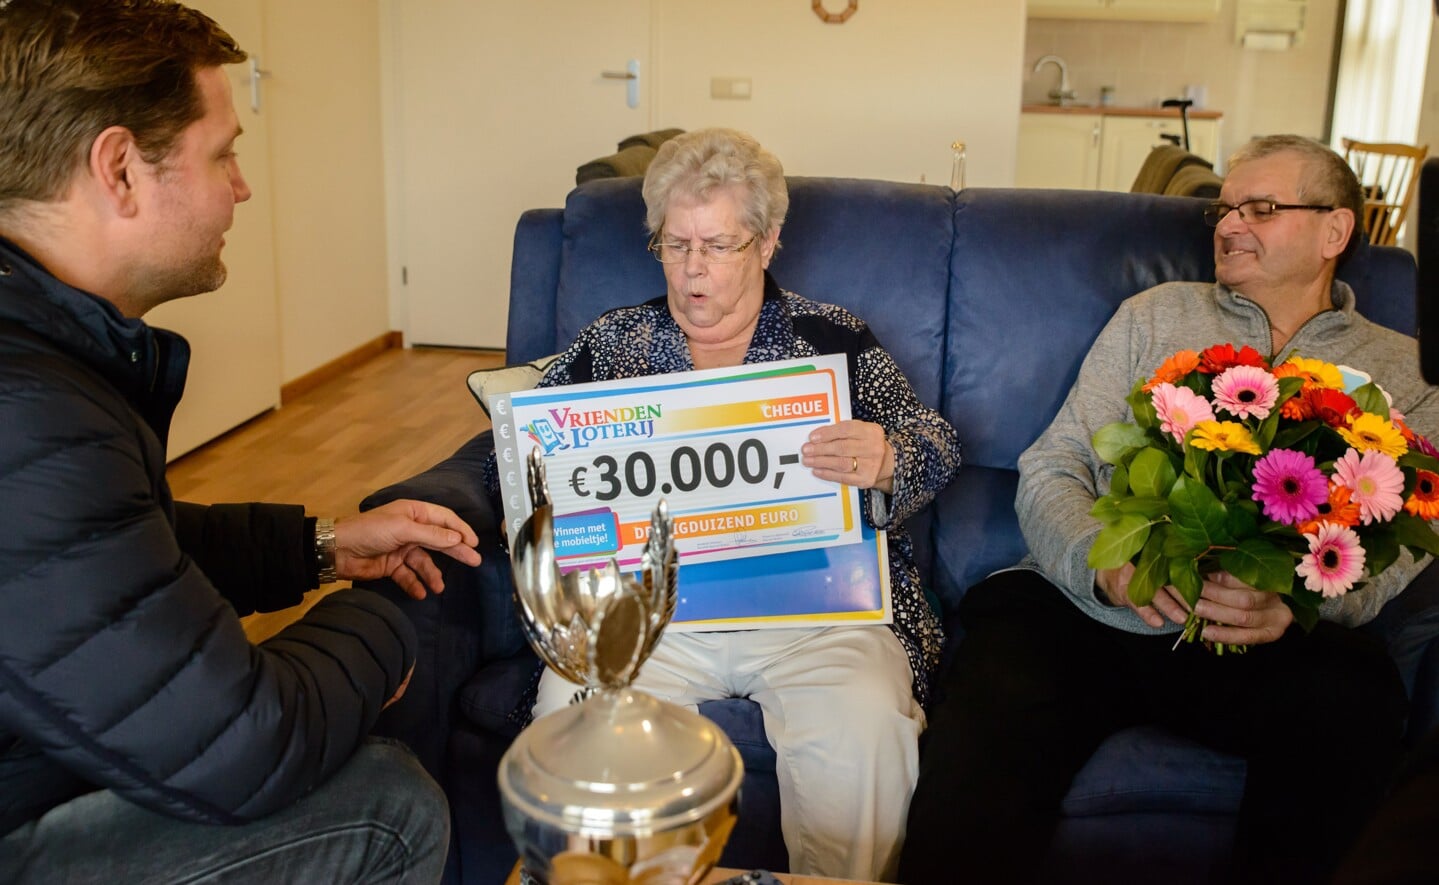 Adriana en Leo uit Boxtel winnen 30.000 bij de VriendenLoterij. Zij ontvangen de prijs uit handen van VriendenLoterij-ambassadeur Dennis van der Geest.